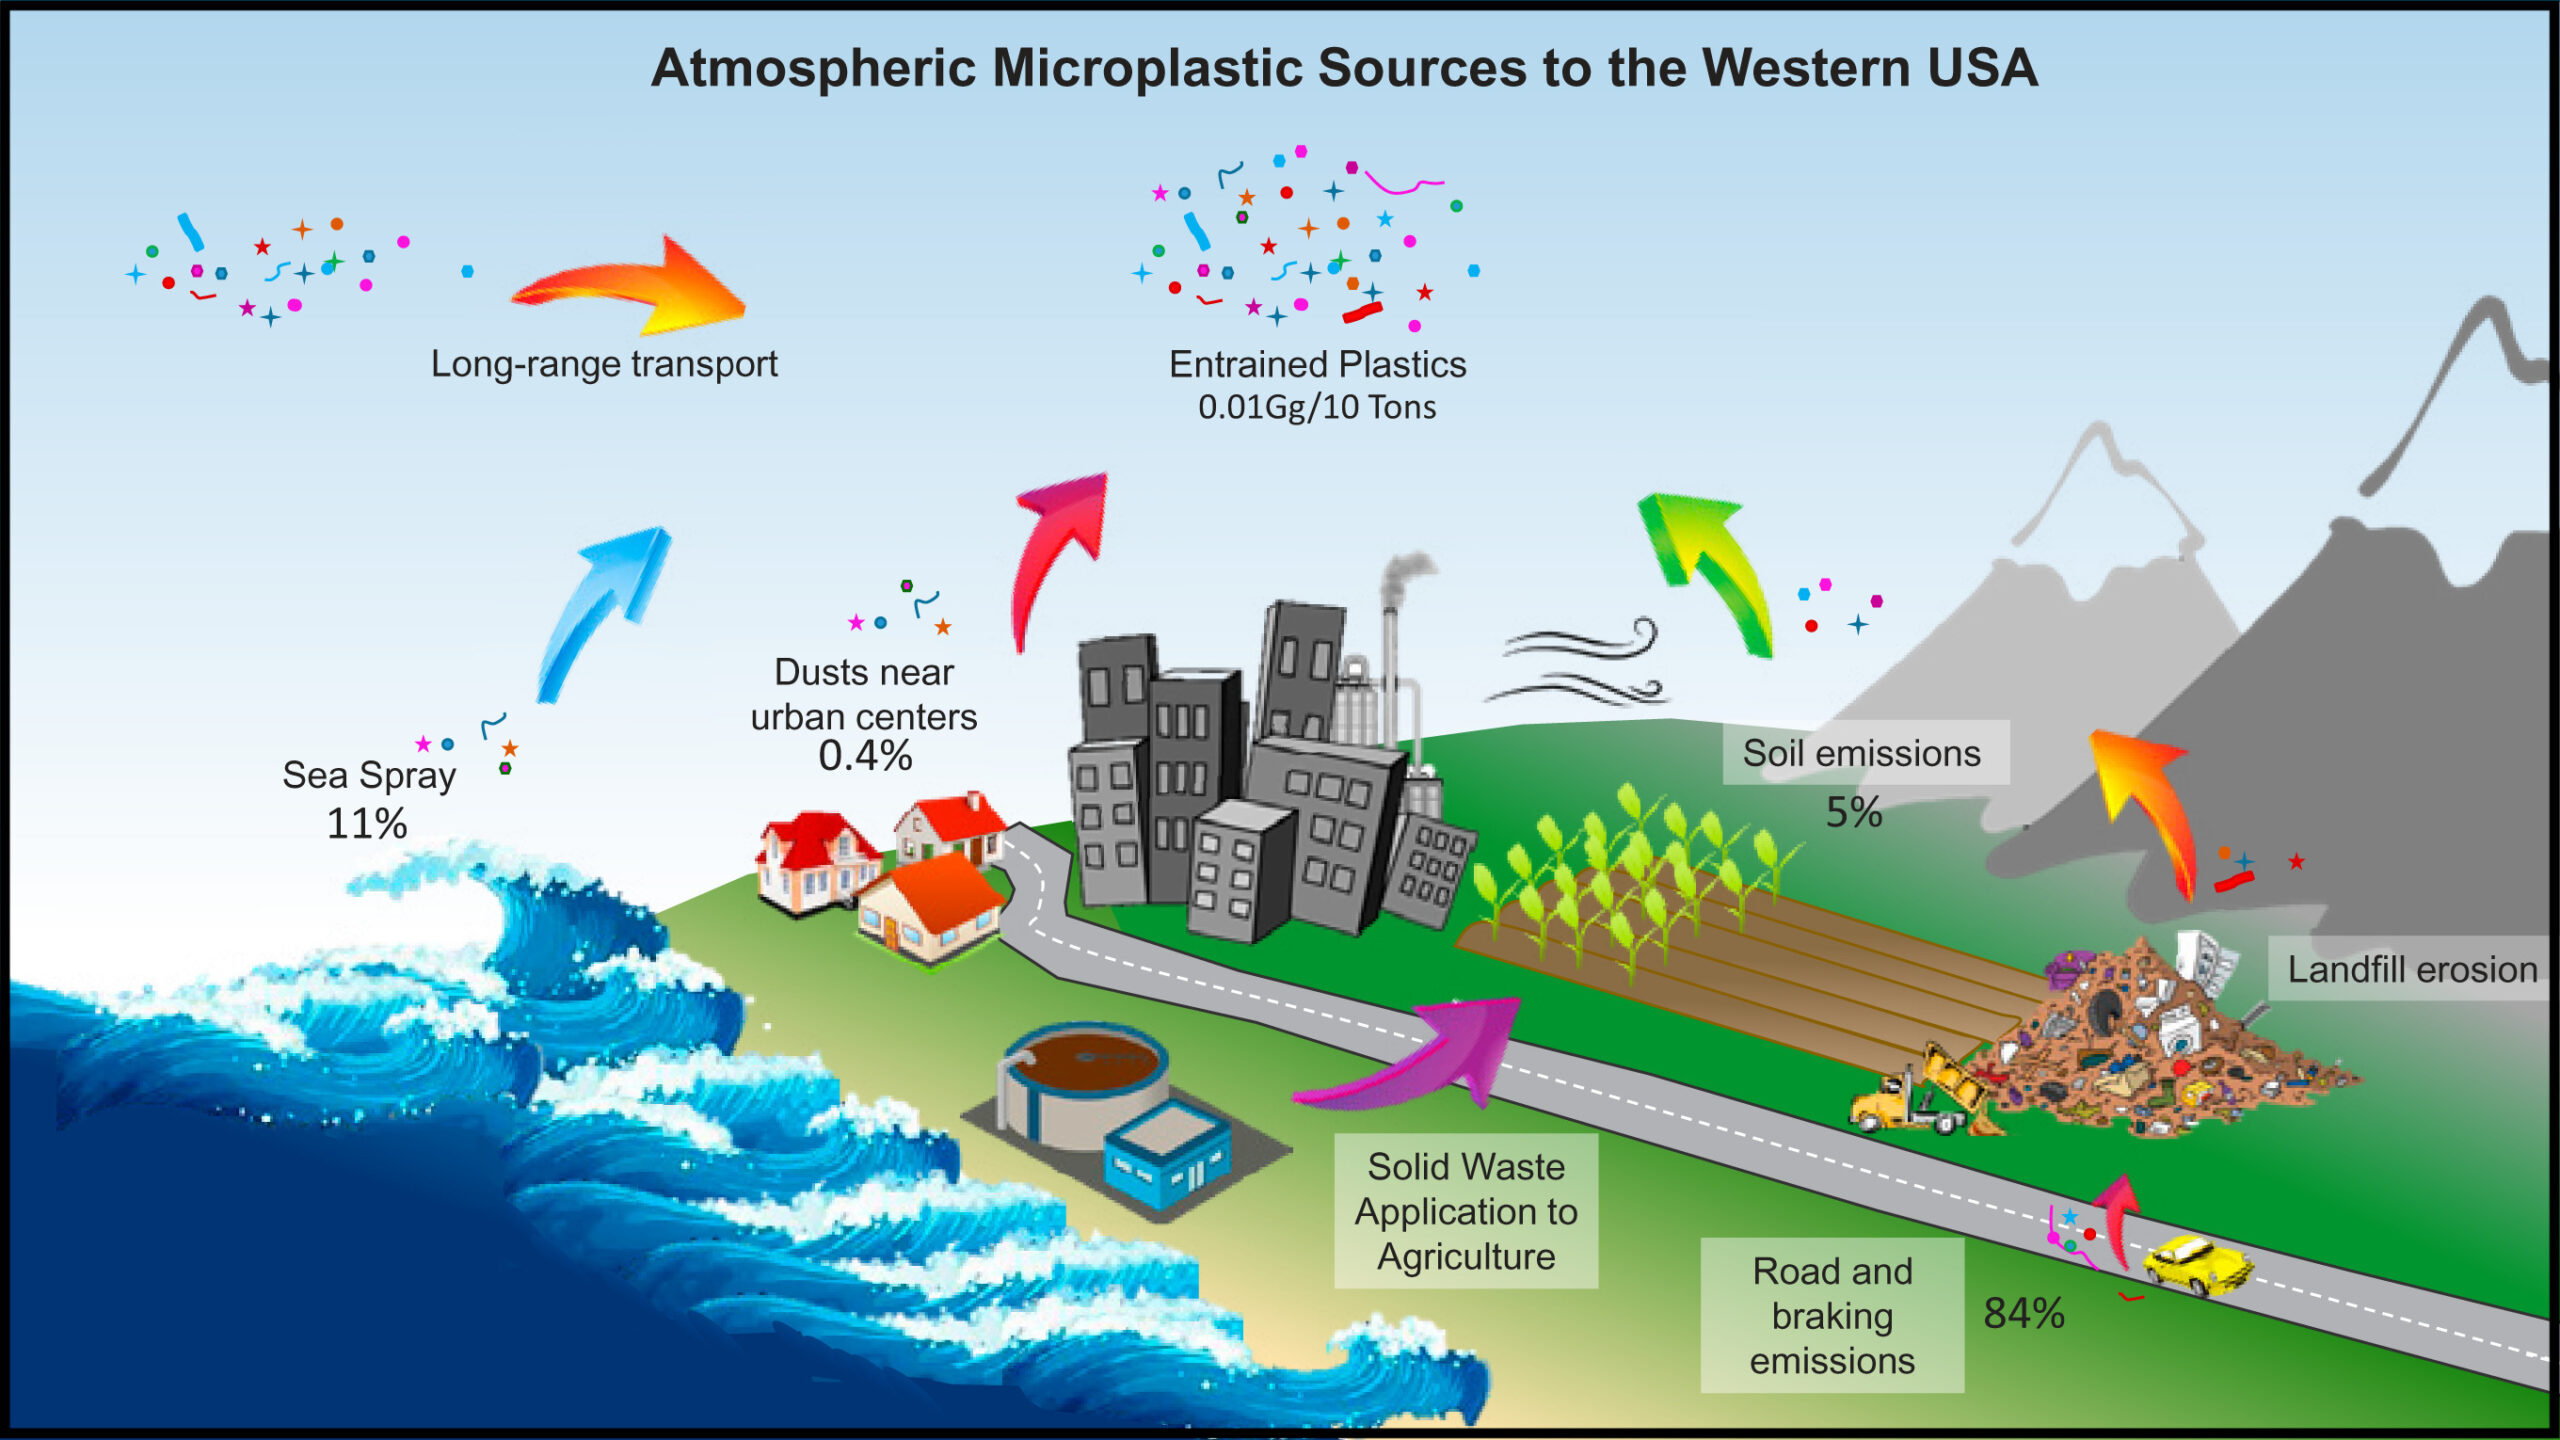 Les microplastiques remplissent le ciel. Vont-ils affecter le climat?